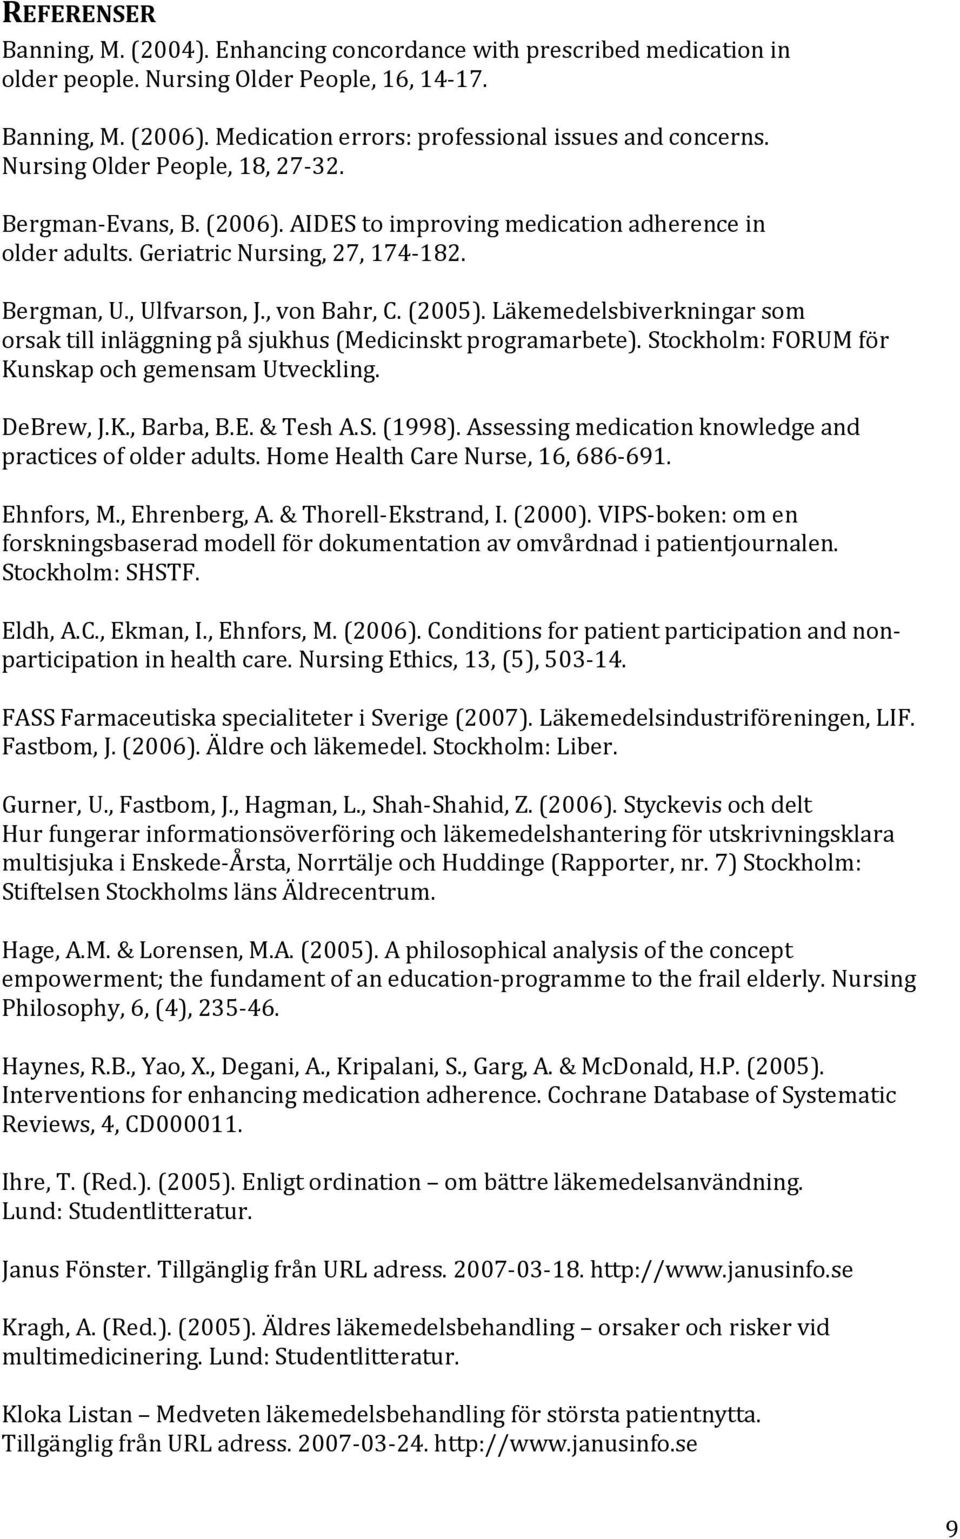 Bergman, U., Ulfvarson, J., von Bahr, C. (2005). Läkemedelsbiverkningar som orsak till inläggning på sjukhus (Medicinskt programarbete). Stockholm: FORUM för Kunskap och gemensam Utveckling.